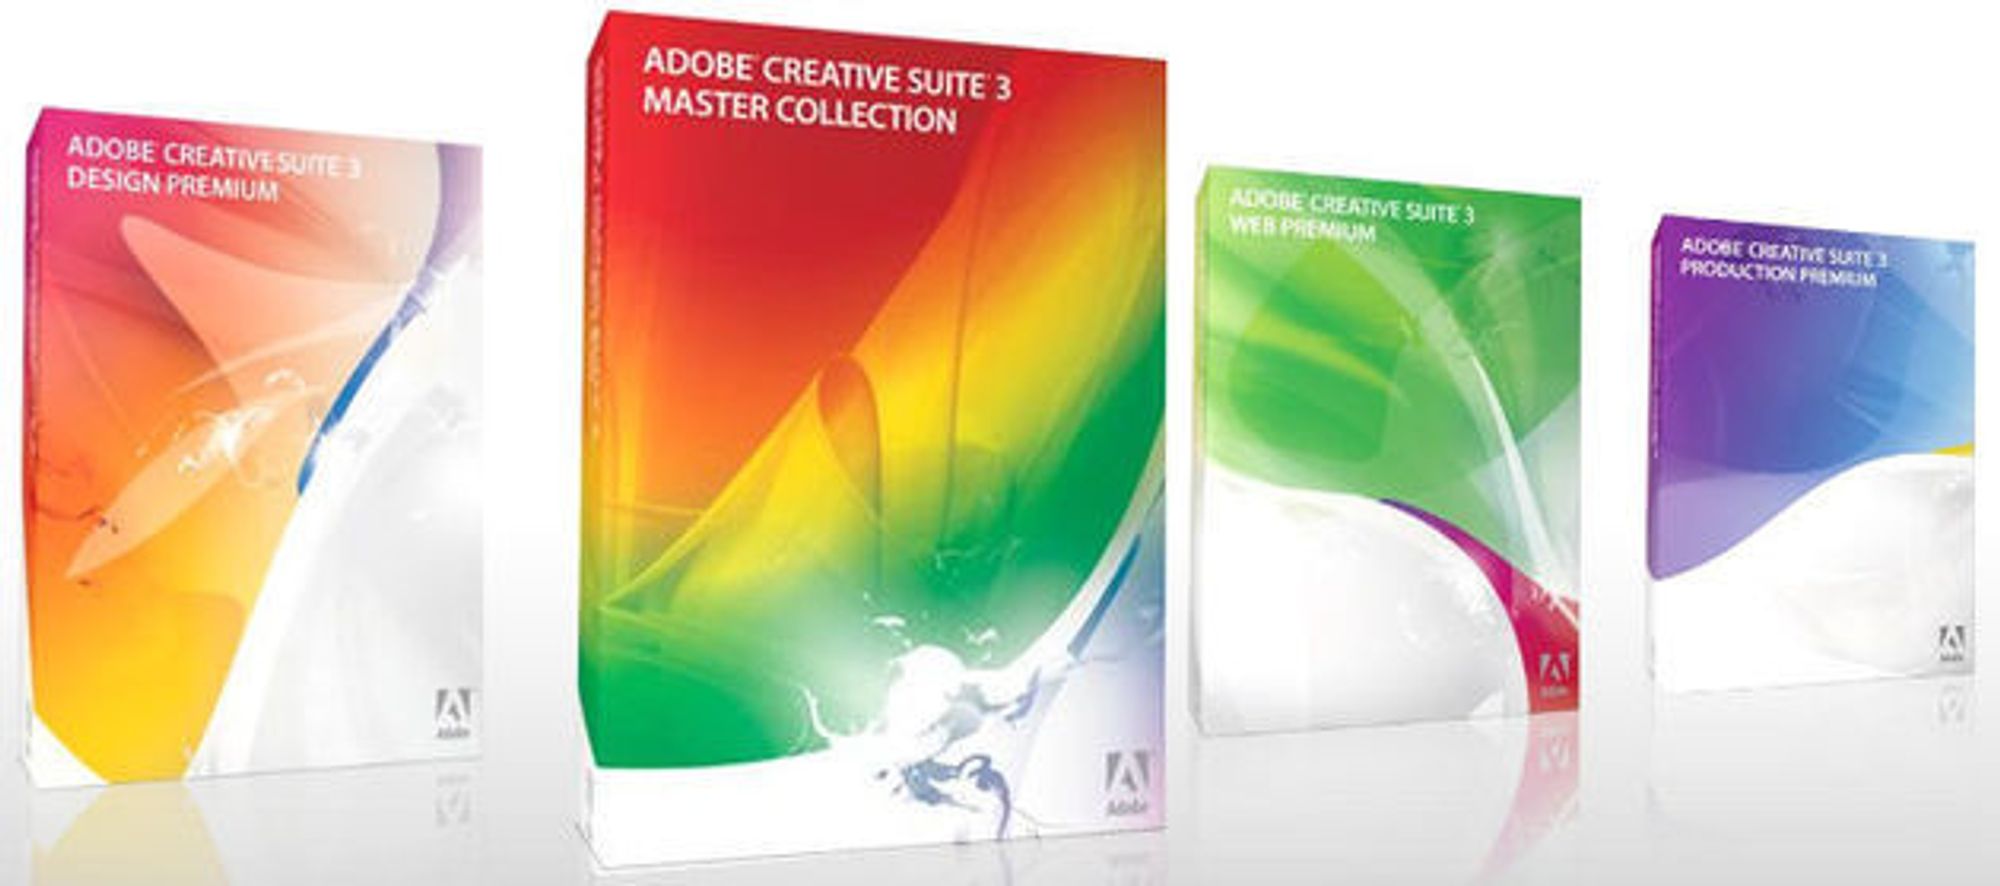 Adobe med seks nye Creative Suite-pakker